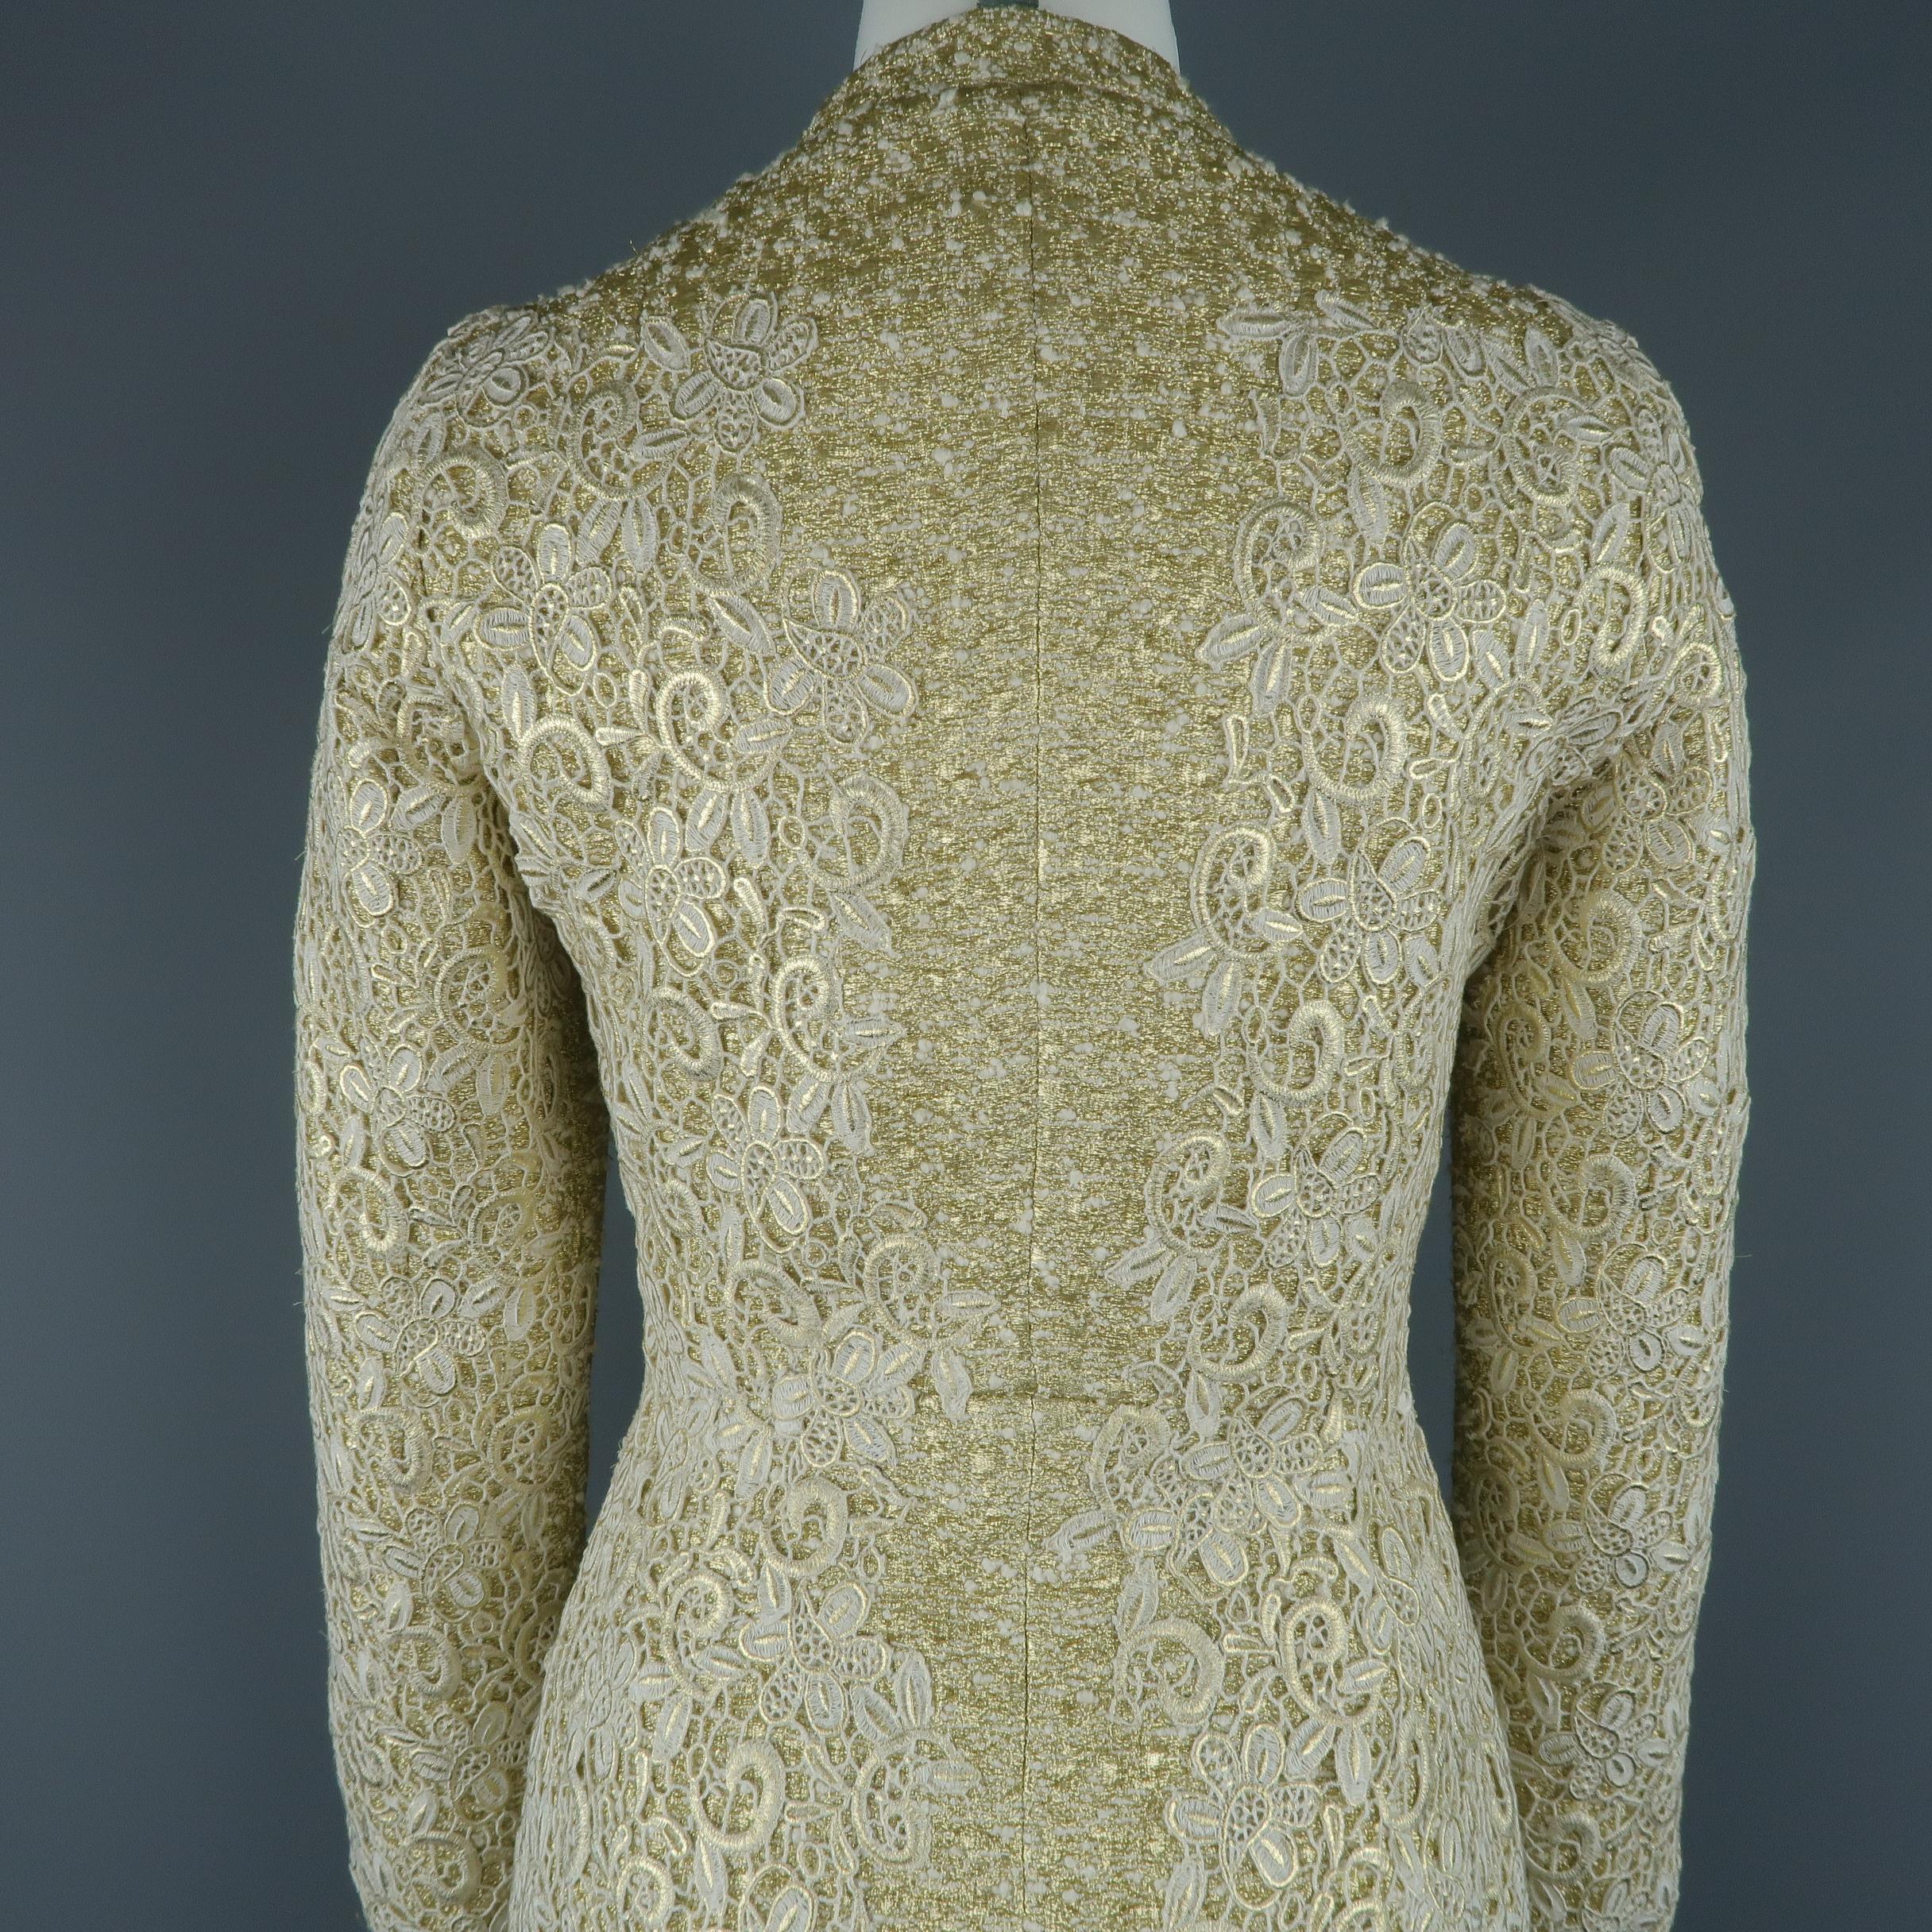 GIAMBATTISTA VALLI Metallic Gold Cotton / Silk Lace Overlay Cocktail Coat-Dress 6